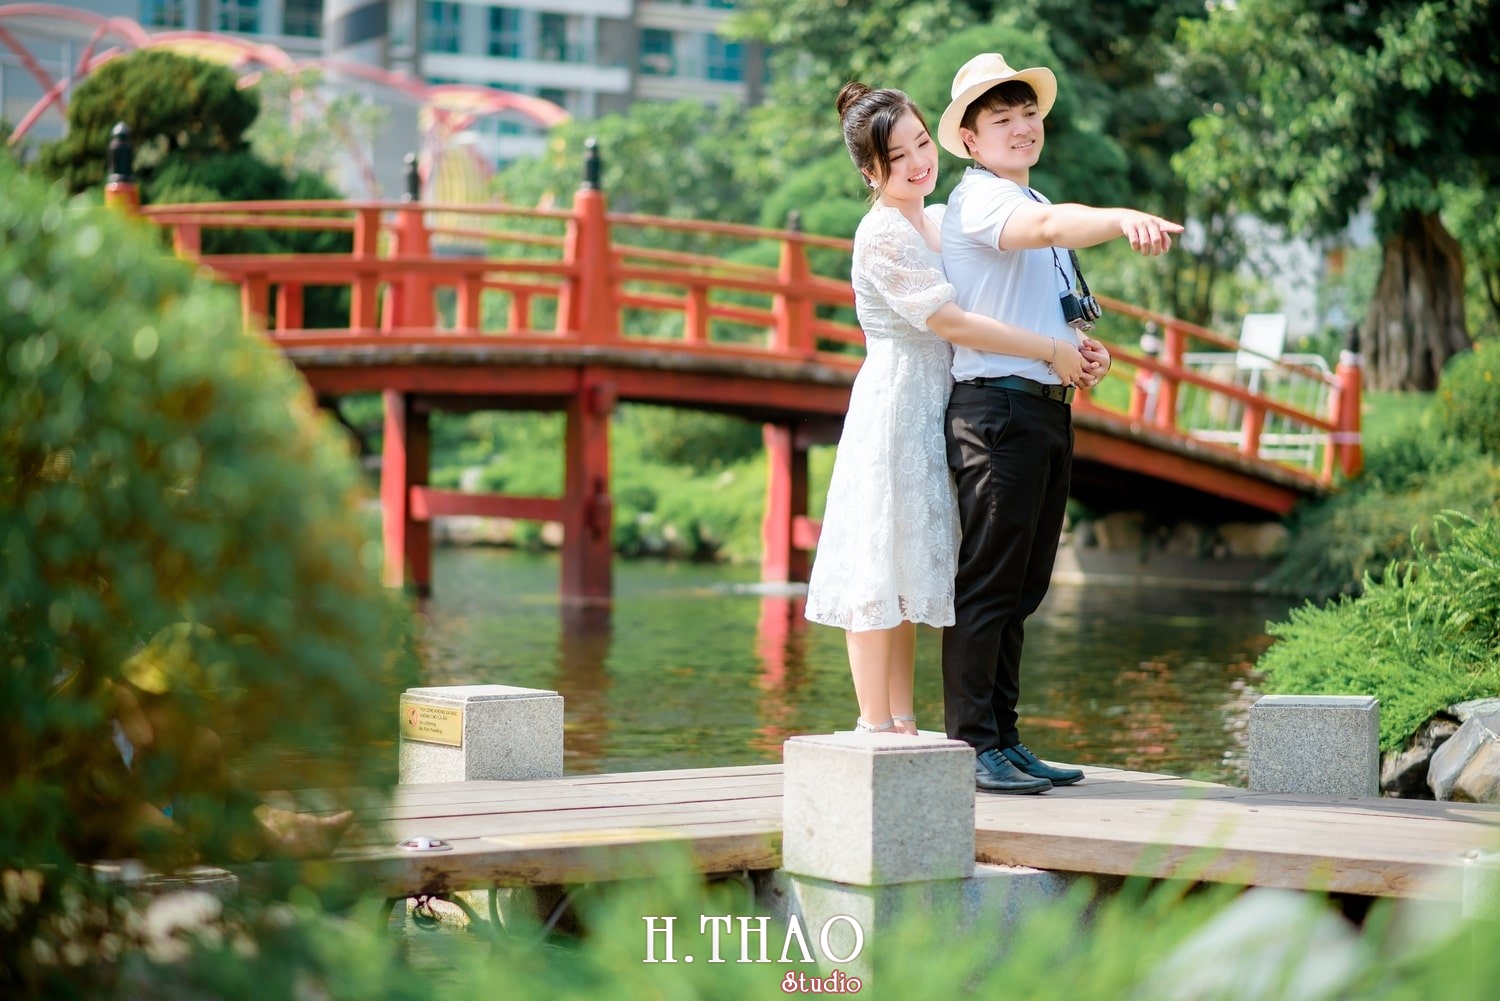 Couple Hai Hang 4 - #10 Địa điểm chụp hình ngoại cảnh đẹp nhất Tp.HCM - HThao Studio